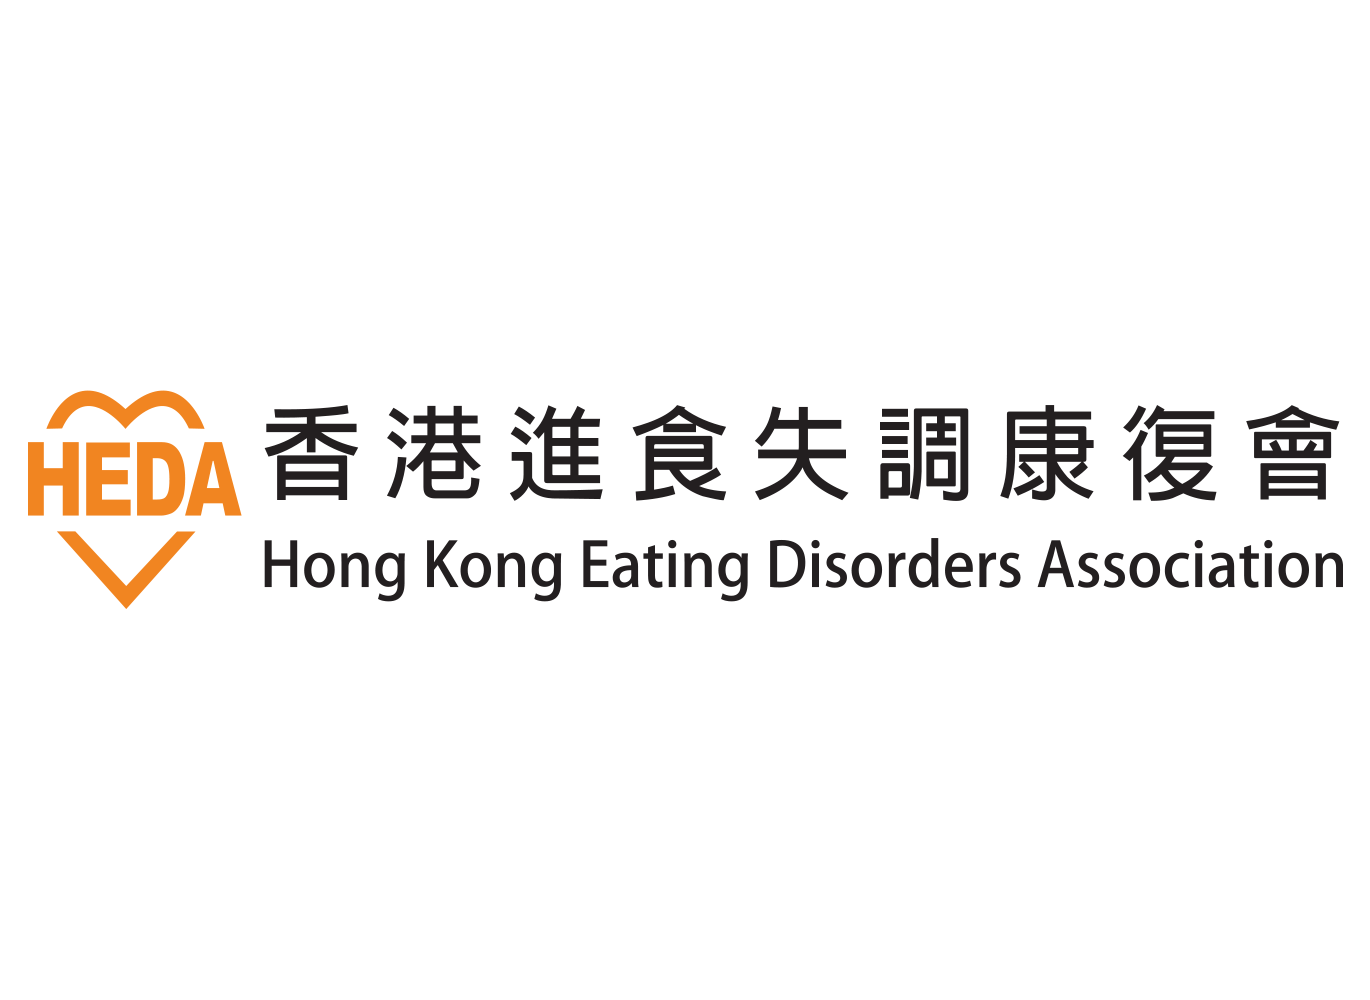 Hong Kong Eating Disorders Association